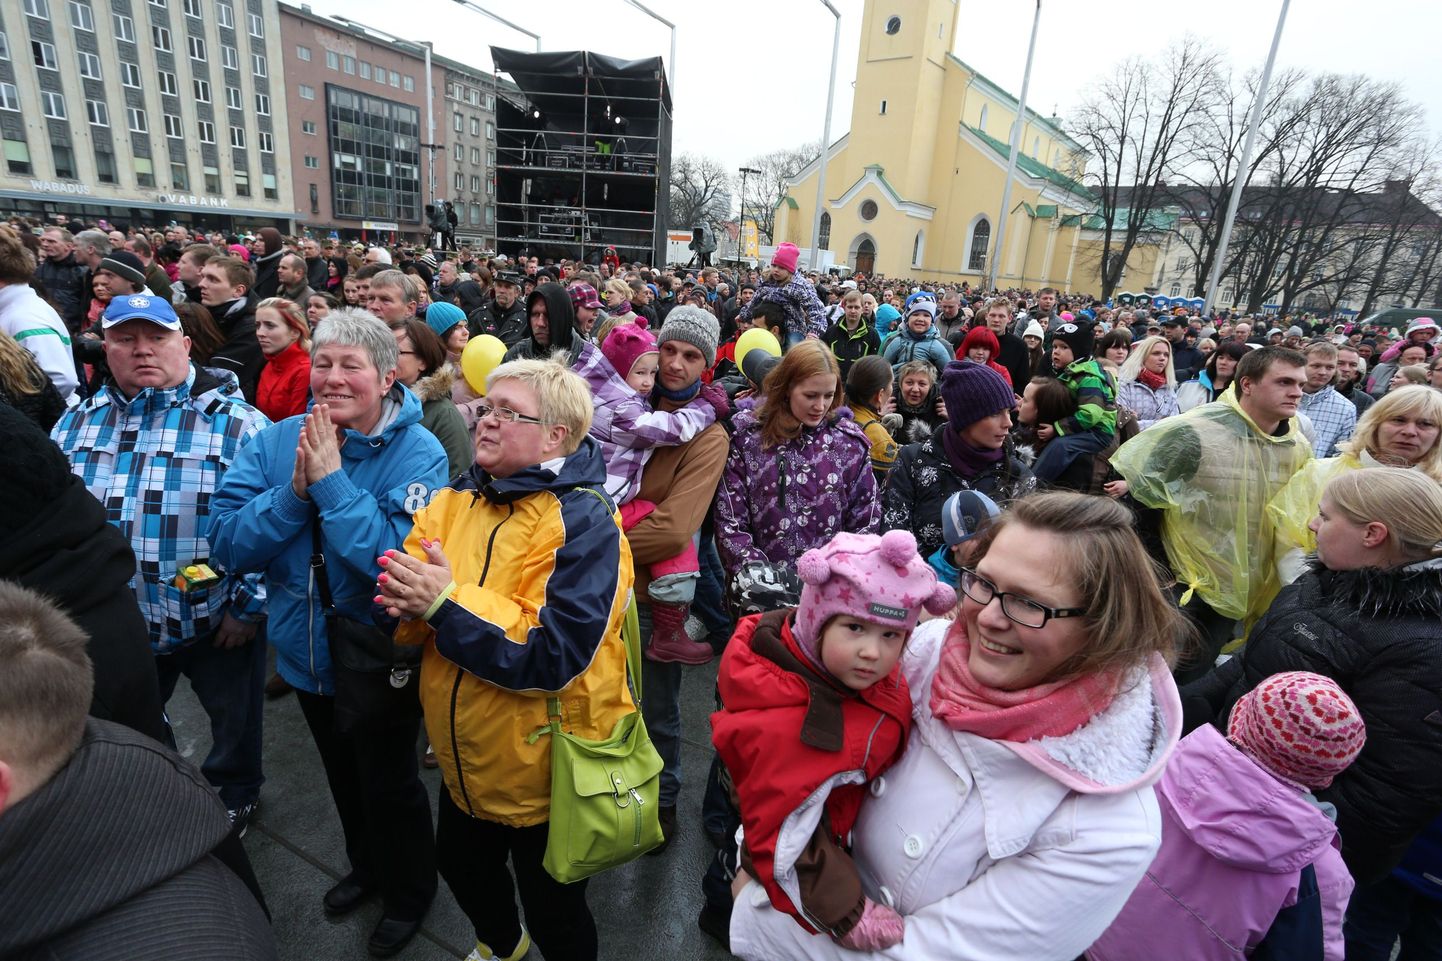 Veteranipäeva puhul korraldab kaitsevägi 23. aprillil algusega kell 18.30 Tallinna Vabaduse väljakul Veteranirocki. Tasuta kontserdil esitavad Singer Vinger, Terminaator, Ultima Thule ja Tõnis Mägi selleks päevaks tehtud kava.